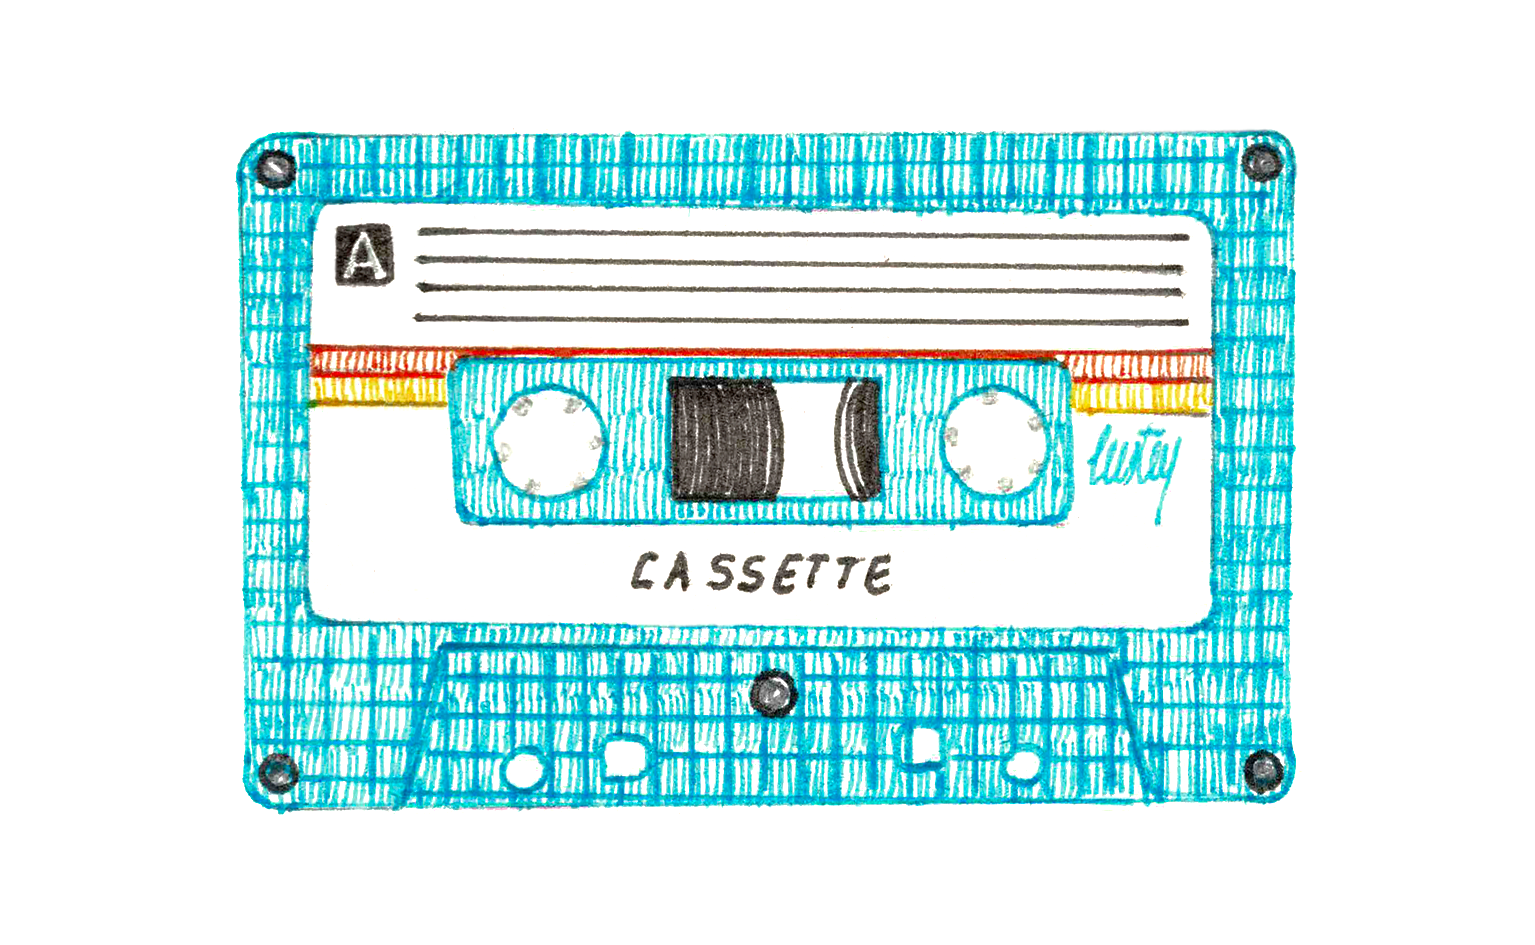 Illustration au stylo encre de couleur d'une cassette audio bleue turquoise